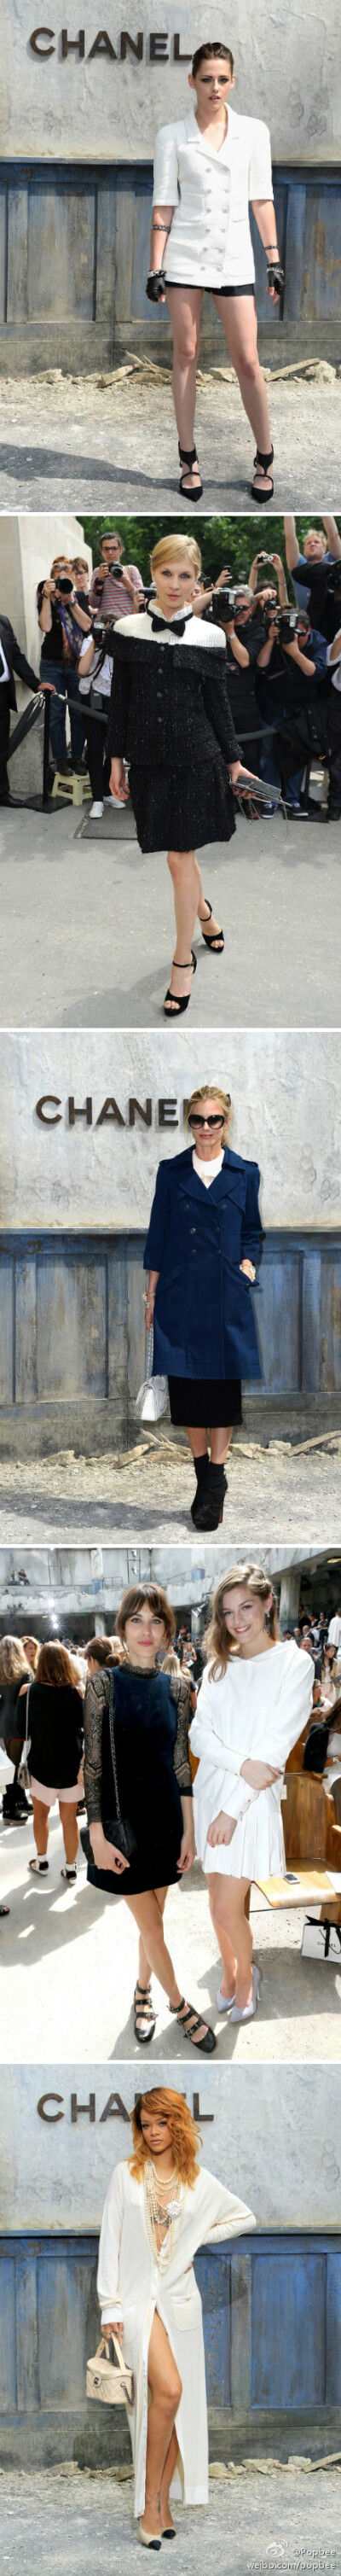 一起看看剛過去的 #Chanel# 高訂服秀場上有哪位坐上客！http://t.cn/zQwA69x